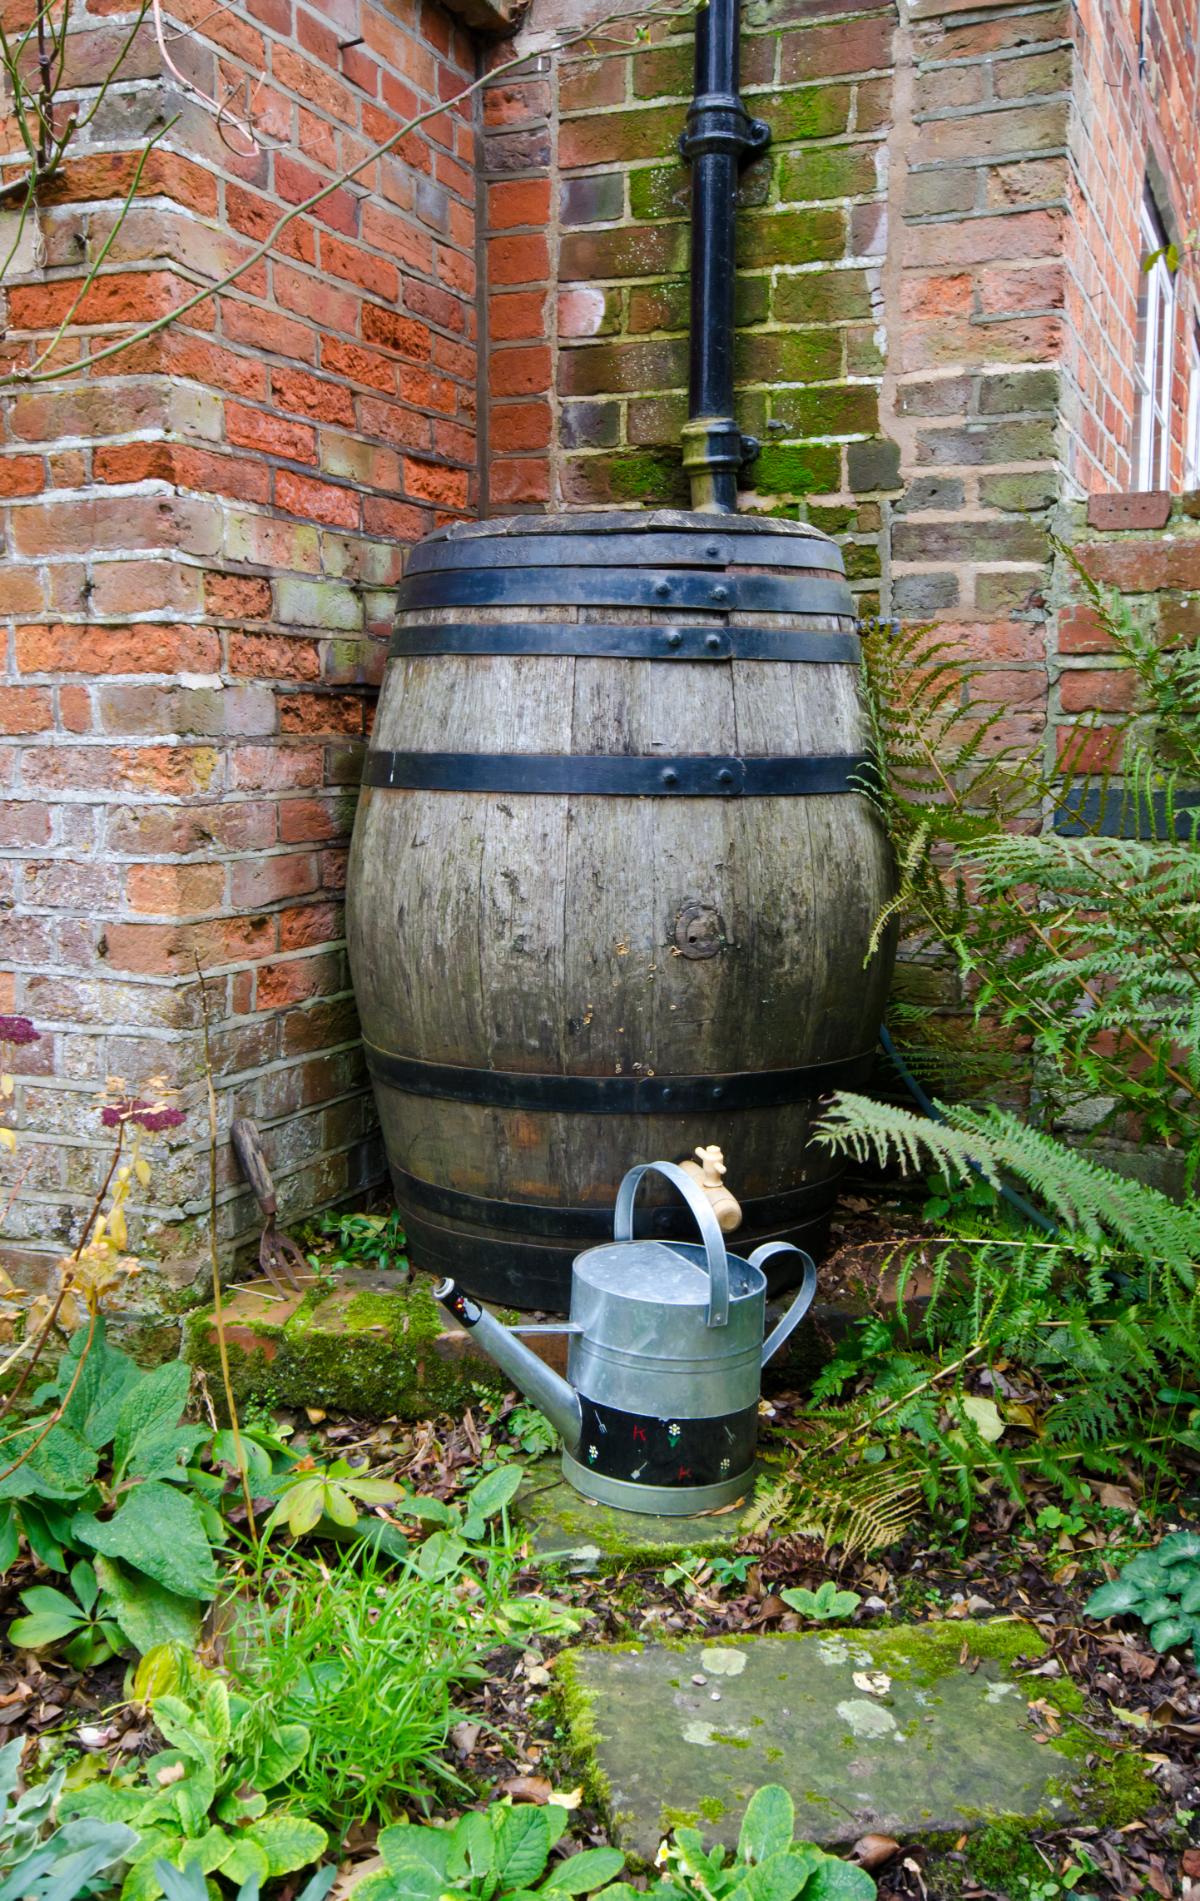 A rain barrel under a house downspout